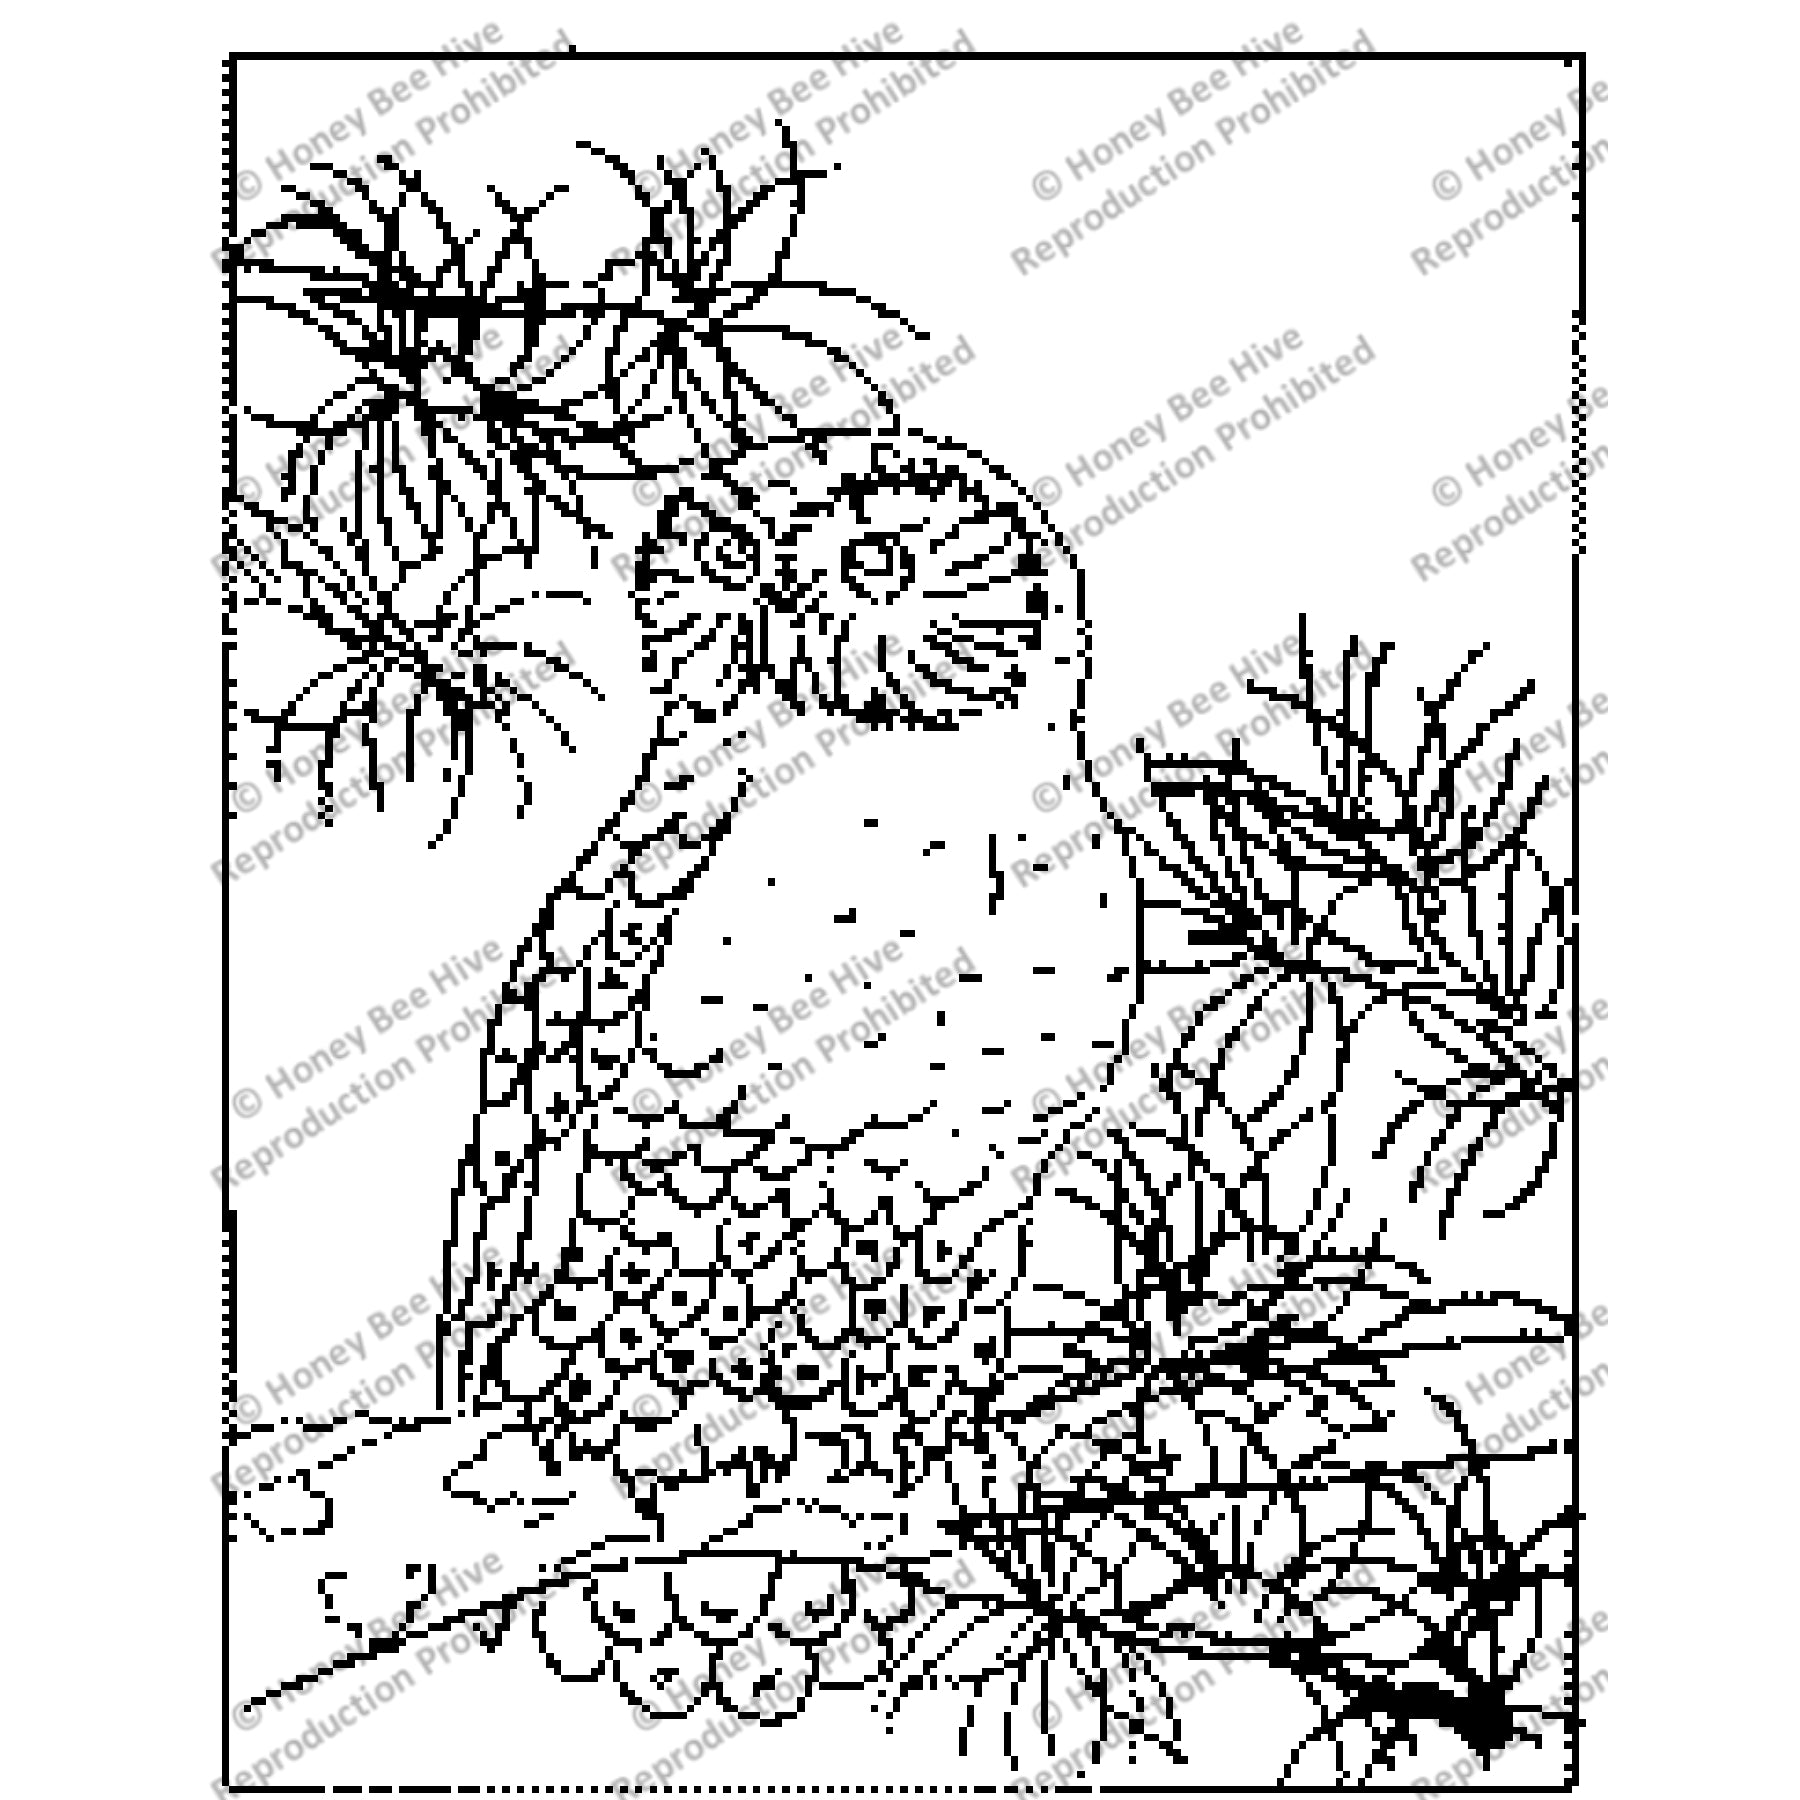 Snowy Owl, rug hooking pattern